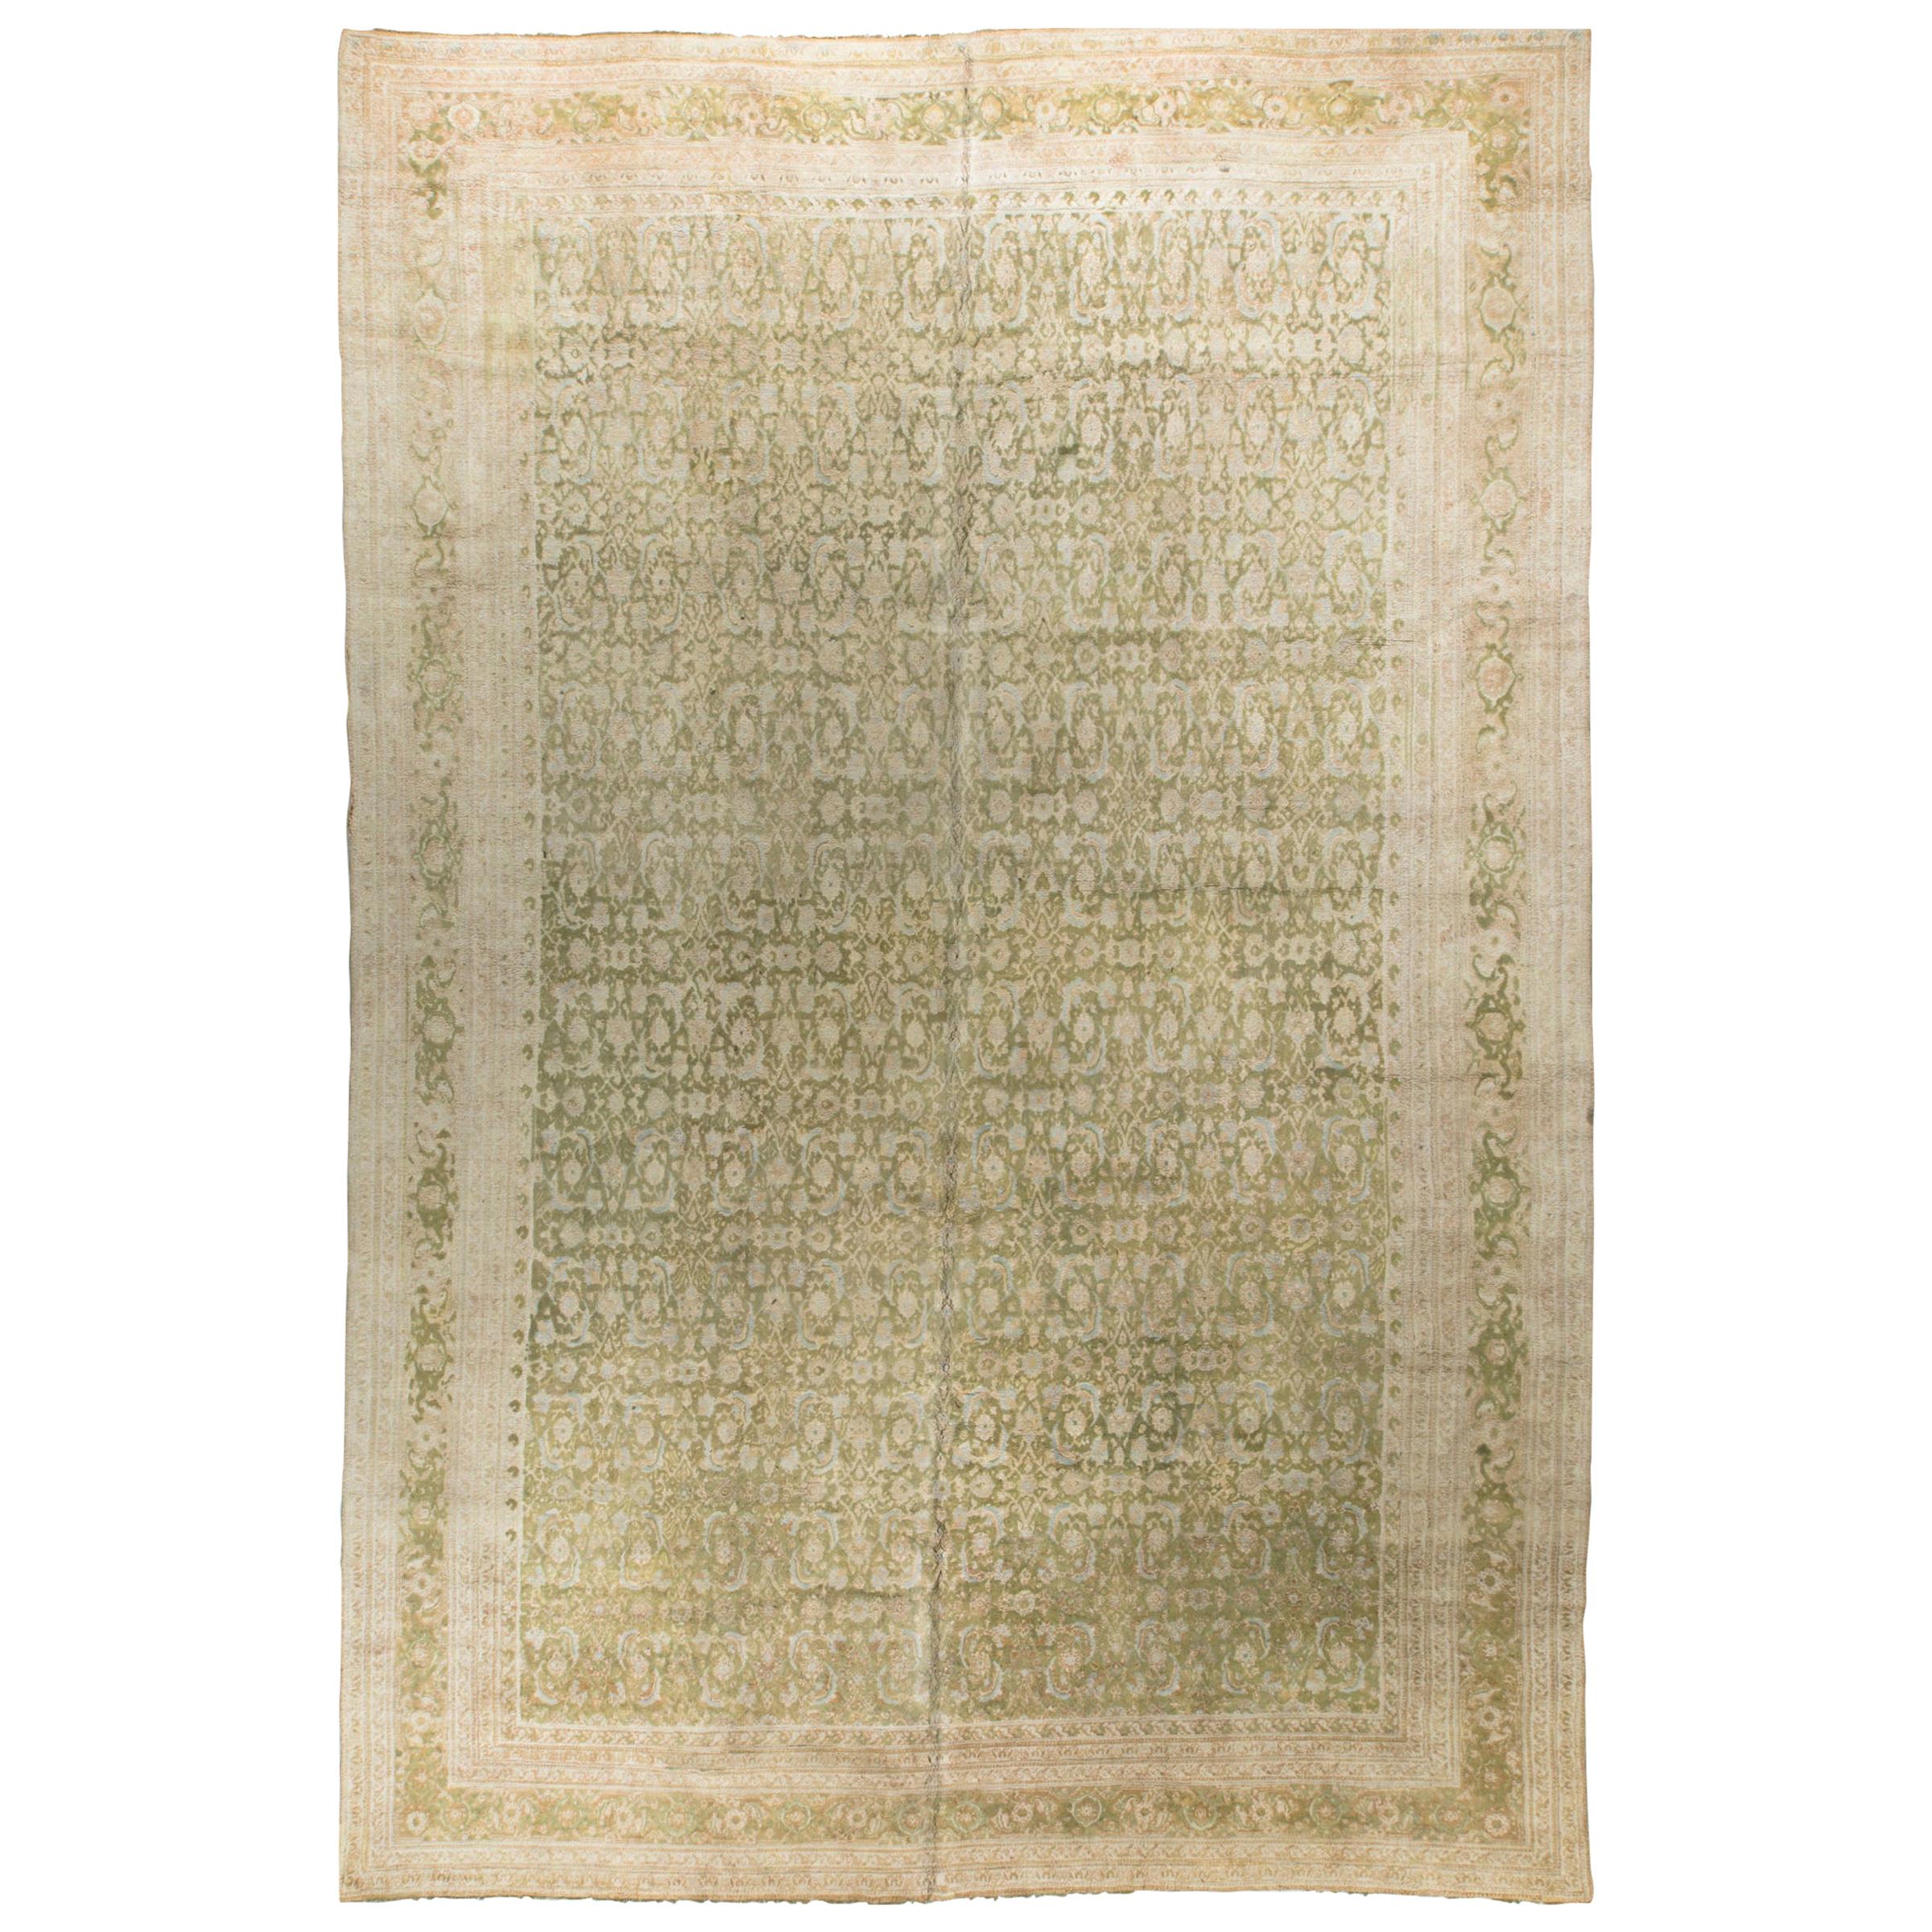 Antique Oversize Indian Cotton Agra Rug, circa 1880  14'4 x 22'3